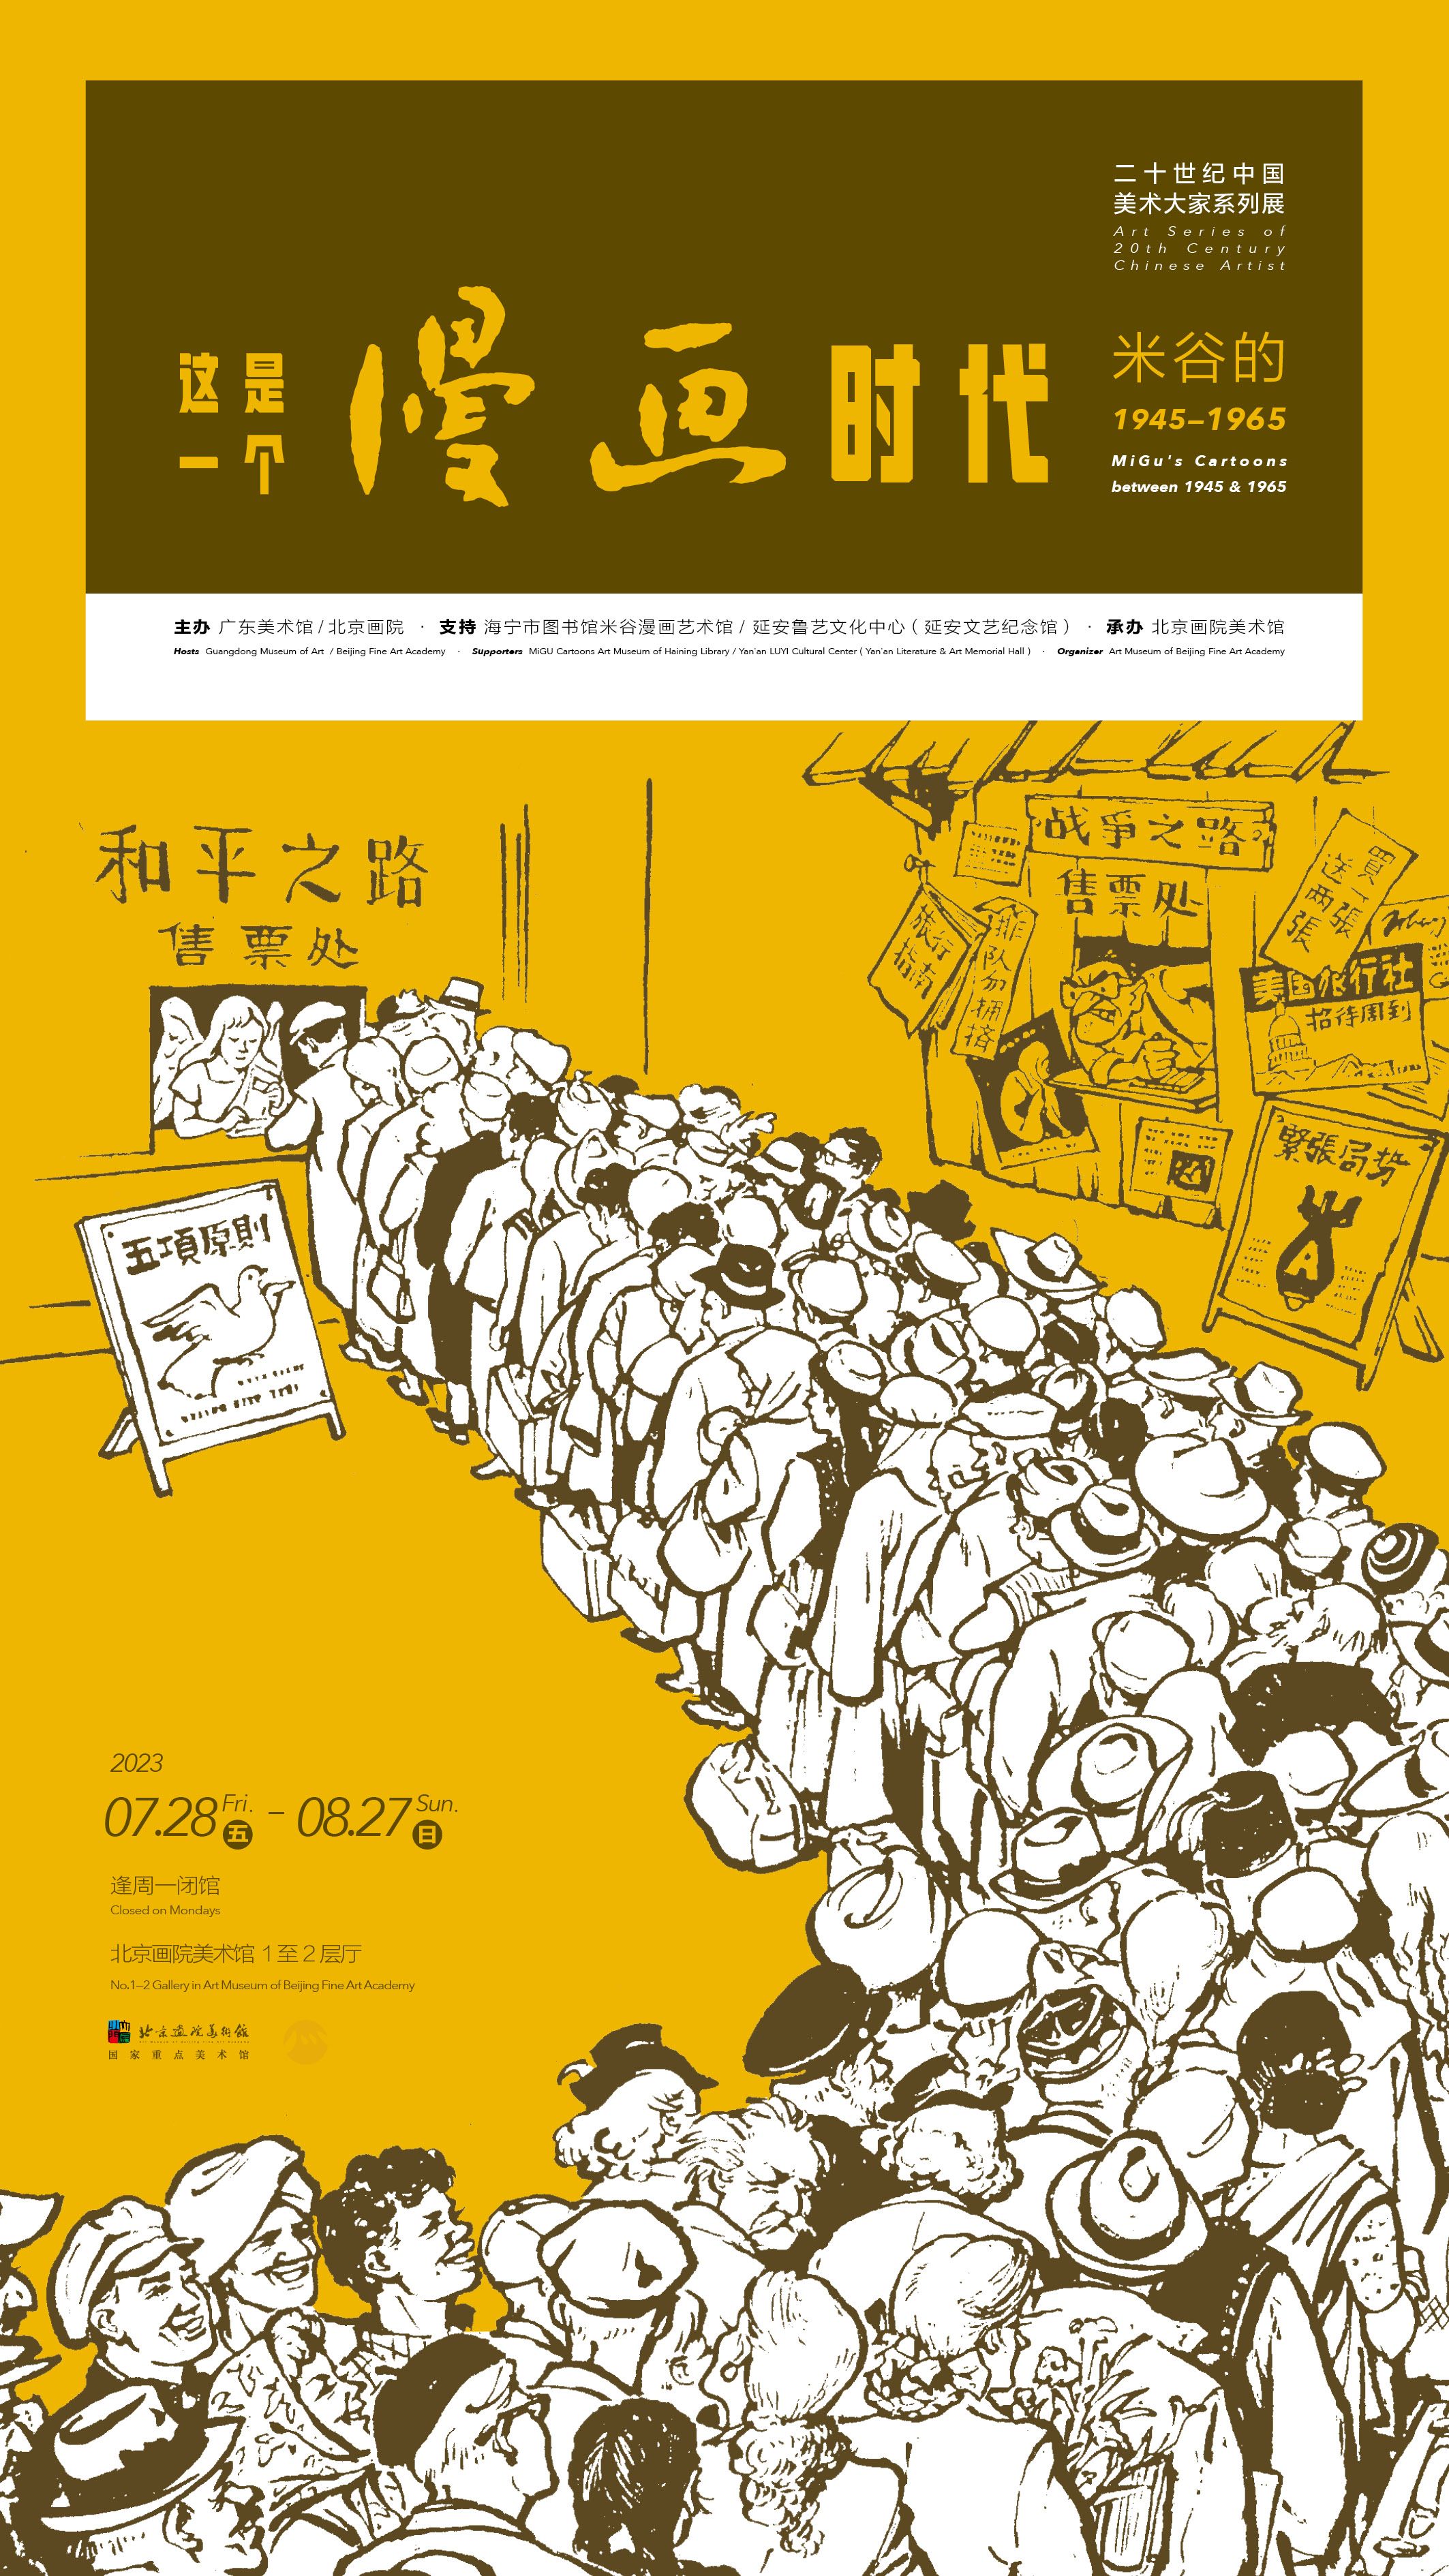 “这是一个漫画时代：米谷的1945-1965”展览